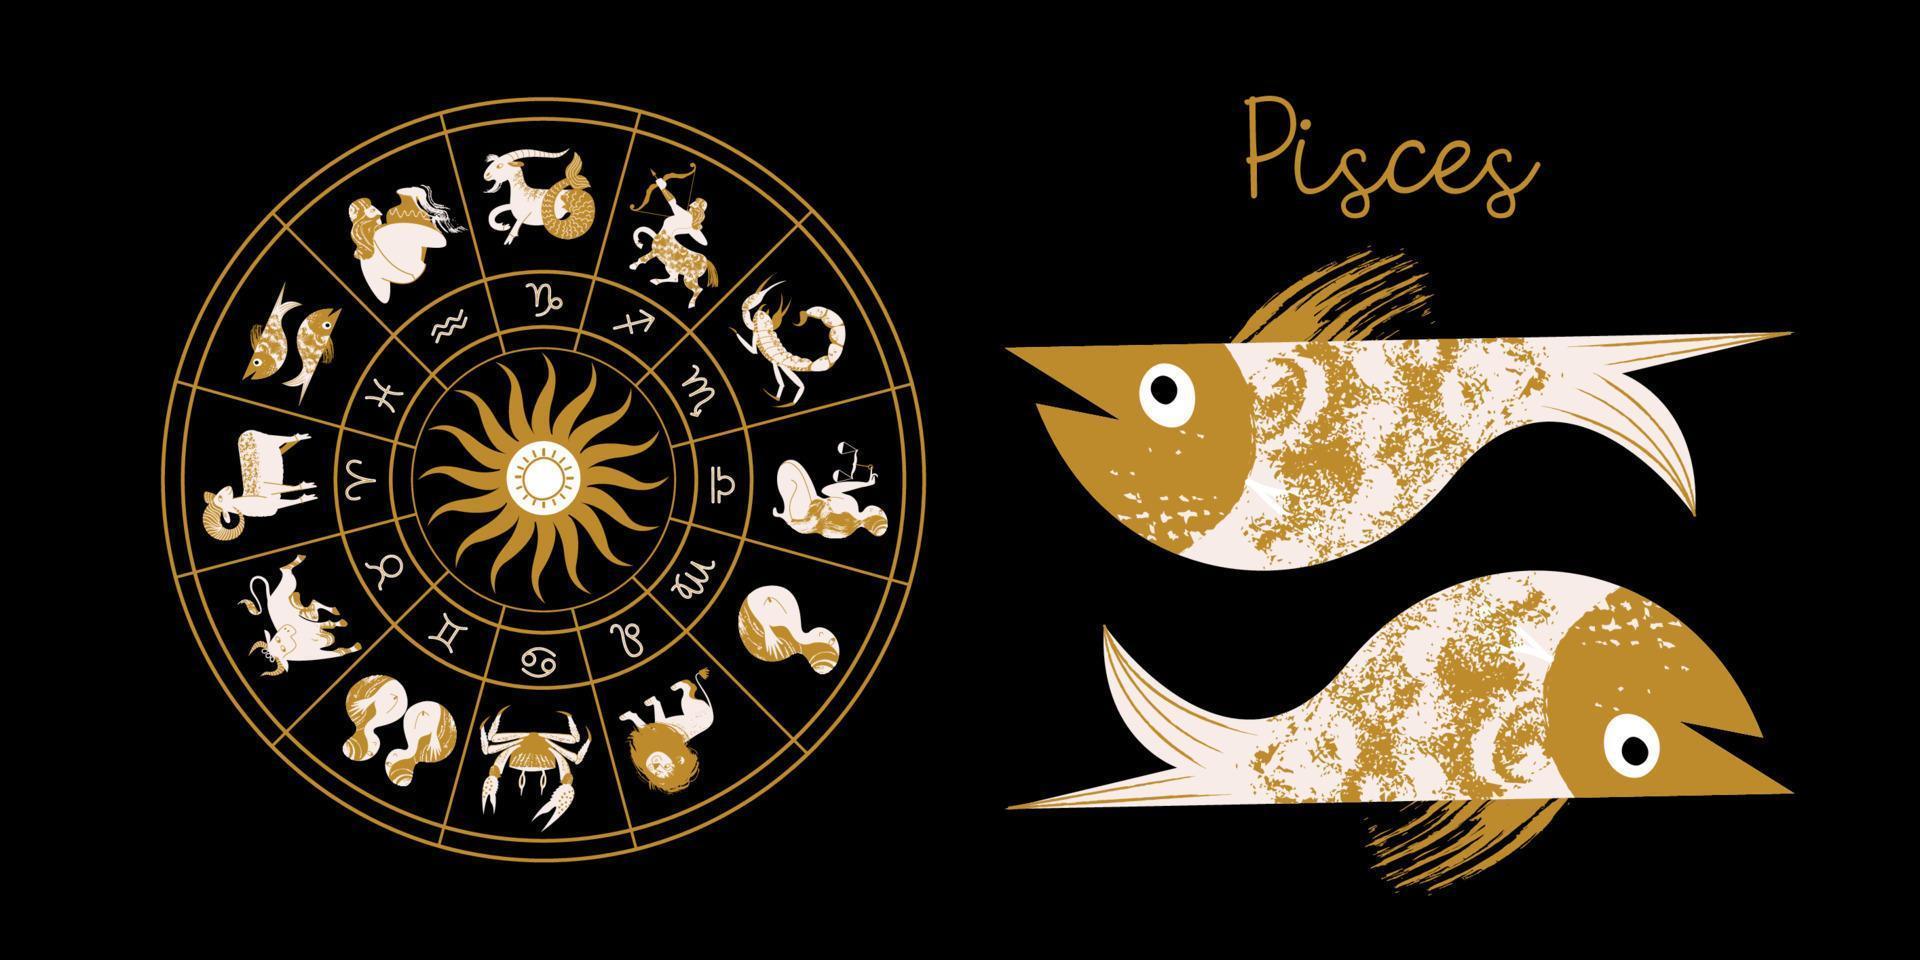 signe du zodiaque poissons. horoscope et astrologie. horoscope complet dans le cercle. zodiaque roue horoscope avec vecteur de douze signes.